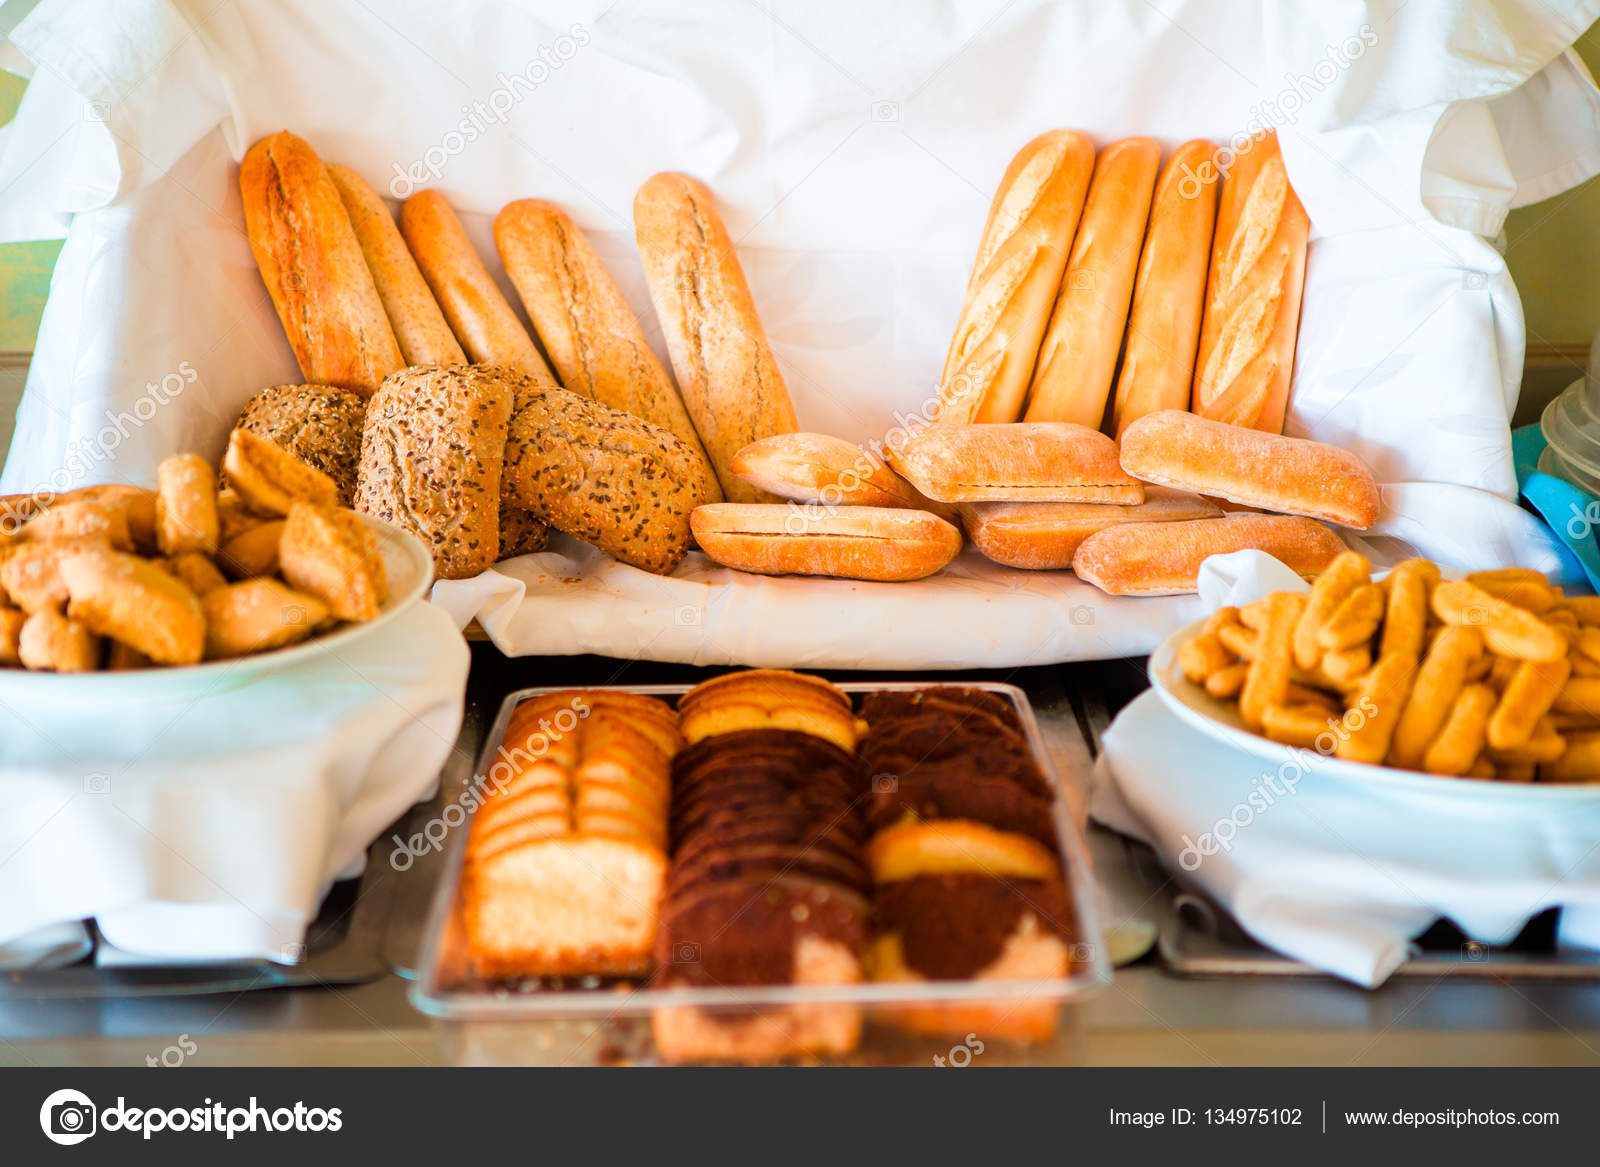 O que comer no lugar do pão no café da manhã?